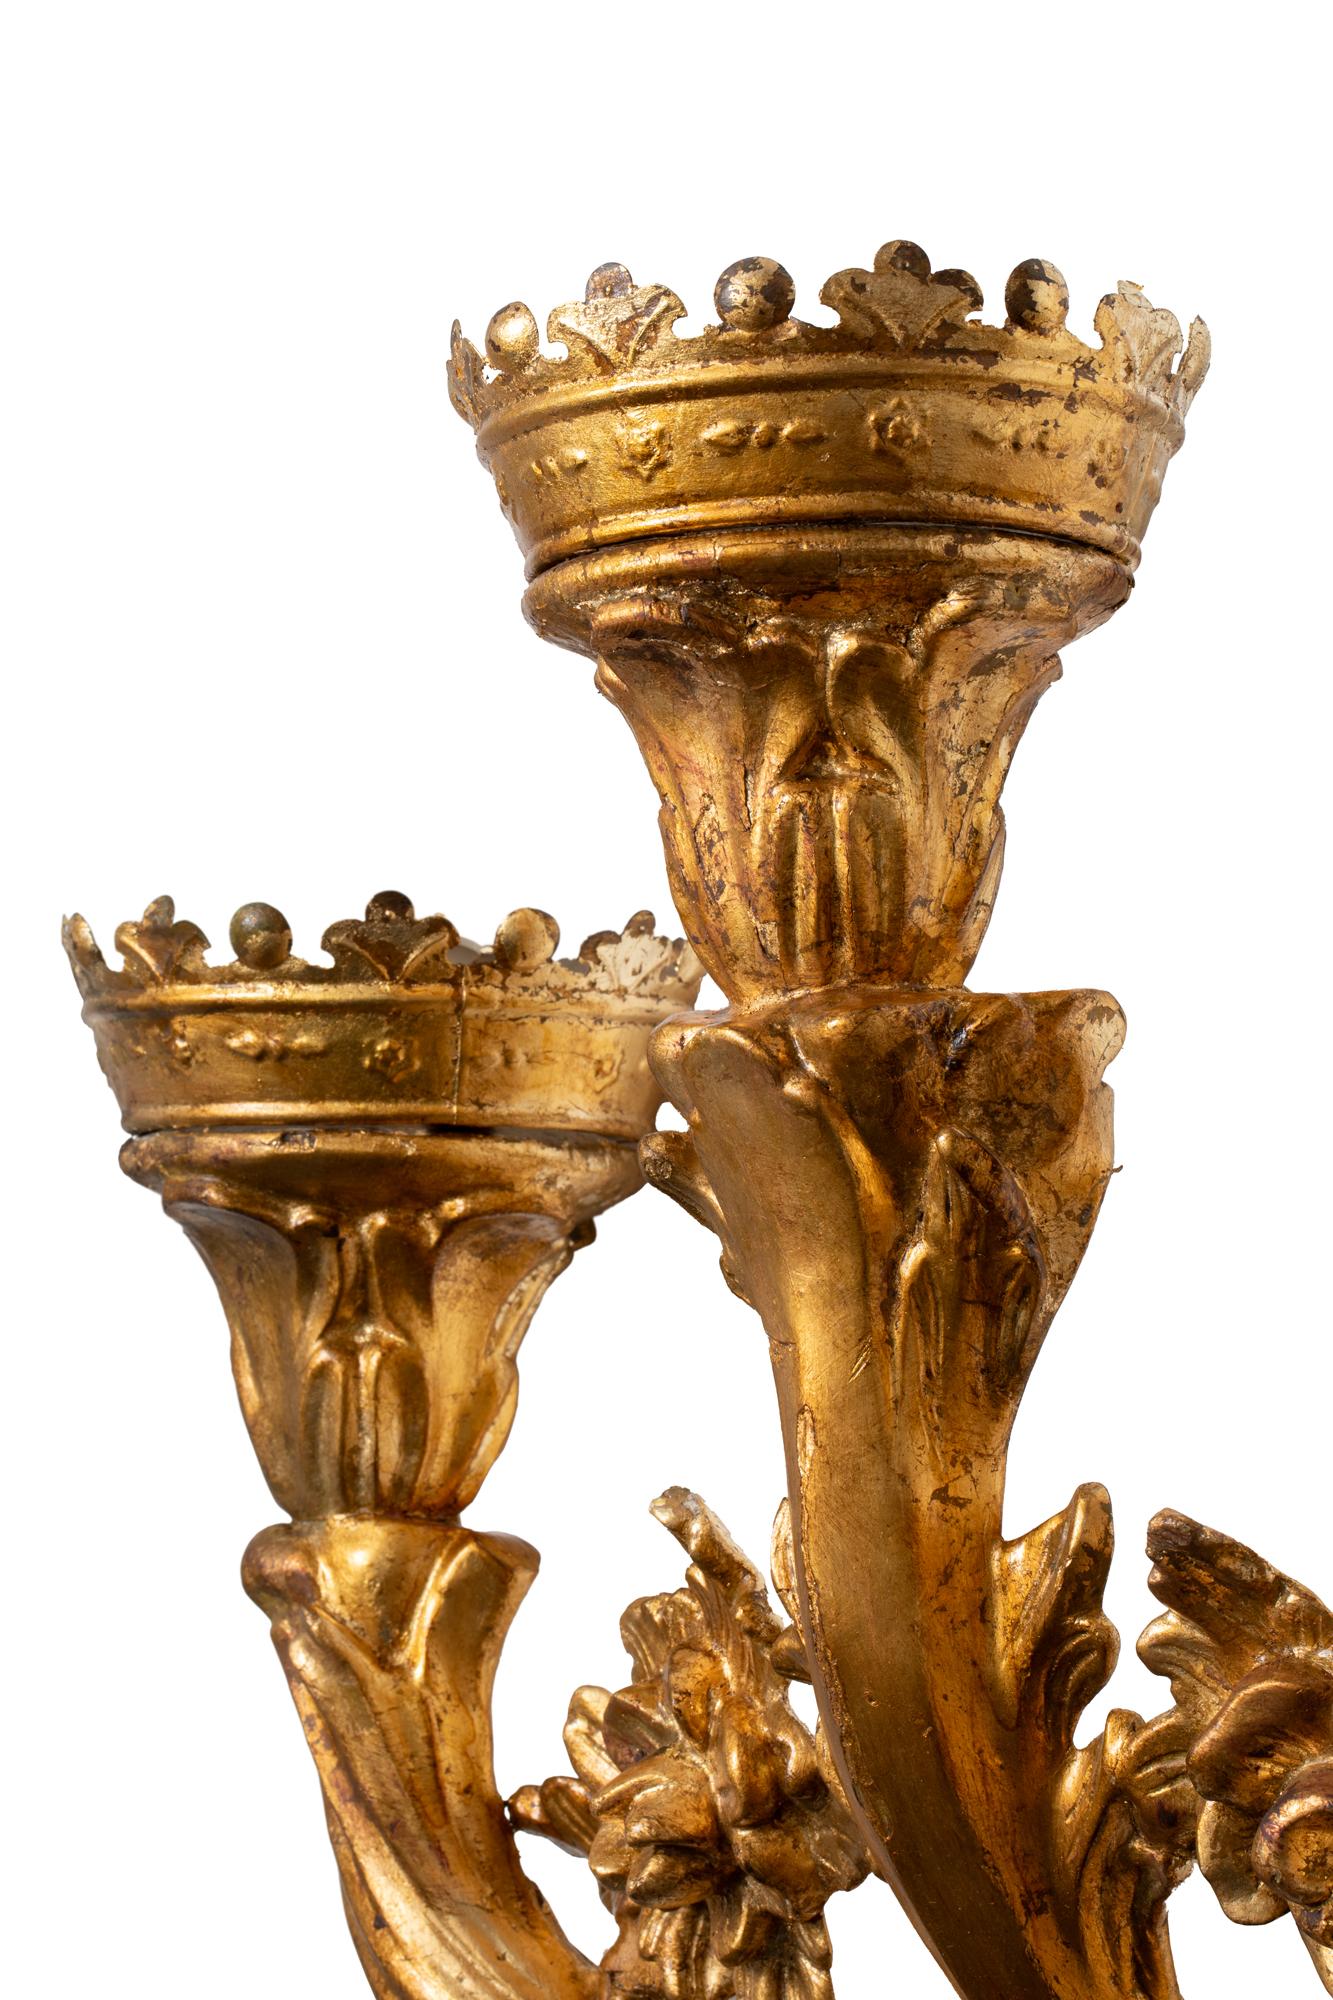 Paire de touchers du XVIIIe siècle en bois doré transformés en appliques lumineuses

Les toucheurs en bois sculpté et doré provenant de l'Espagne du XVIIIe siècle sont des exemples exquis de l'artisanat et du flair artistique caractéristiques des